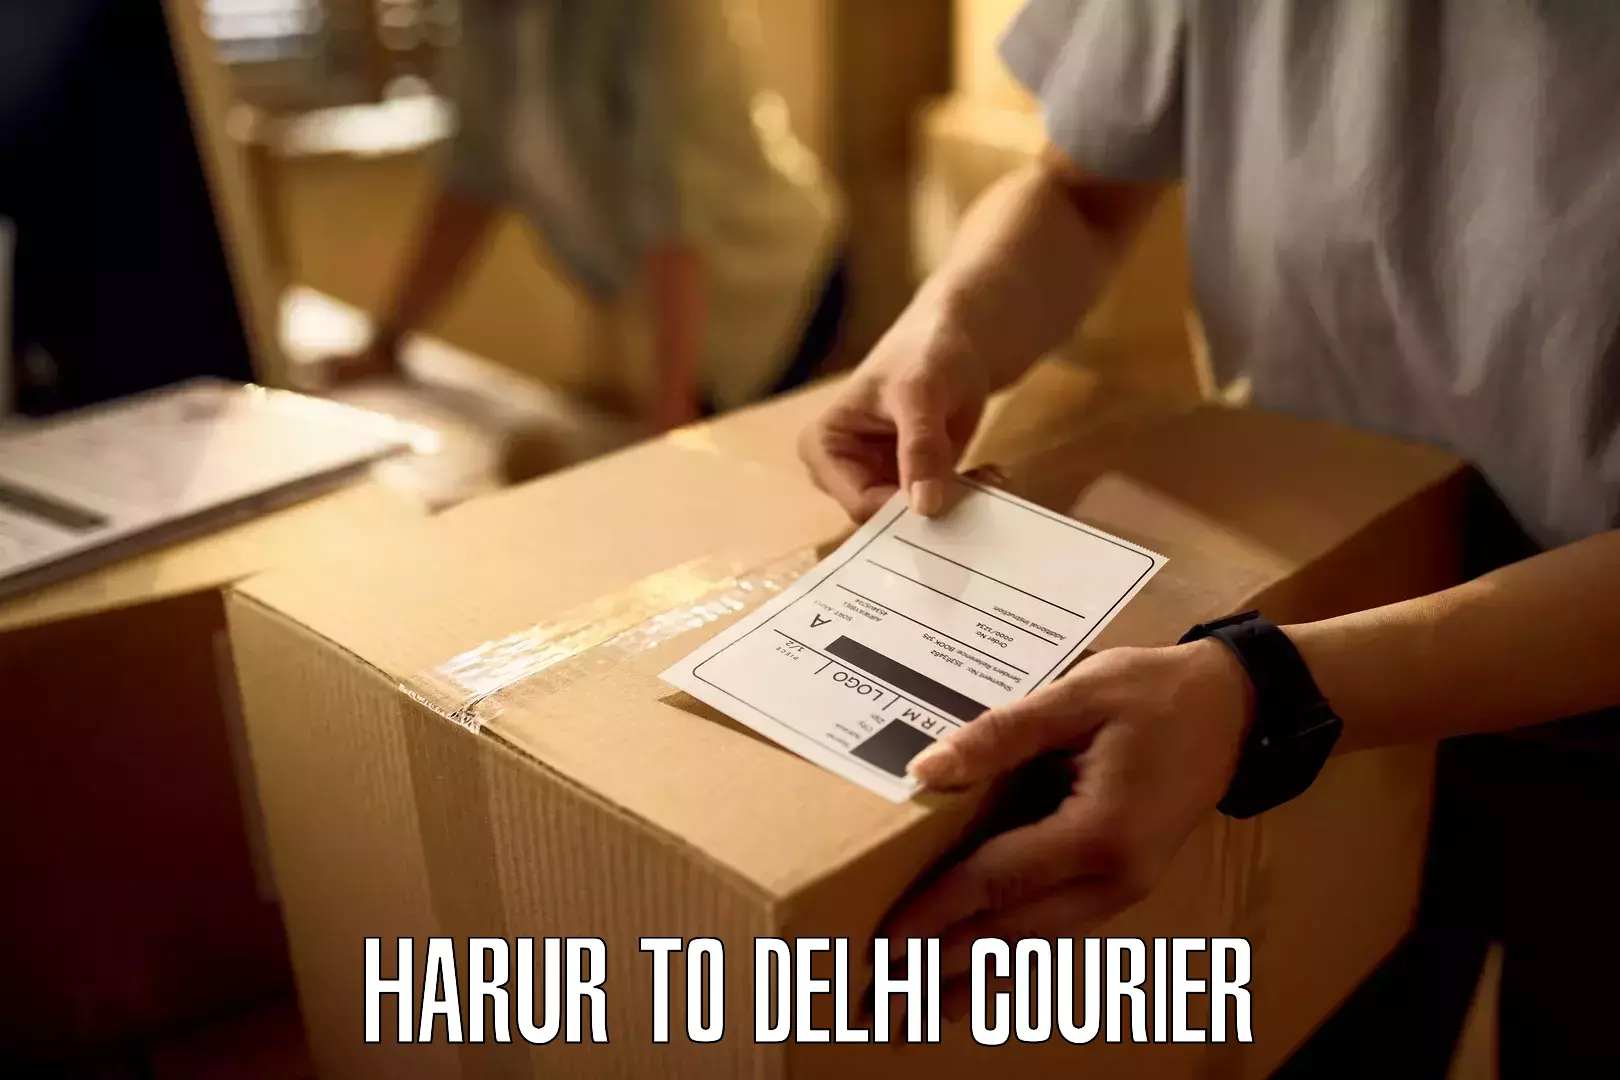 Next-day freight services Harur to Delhi